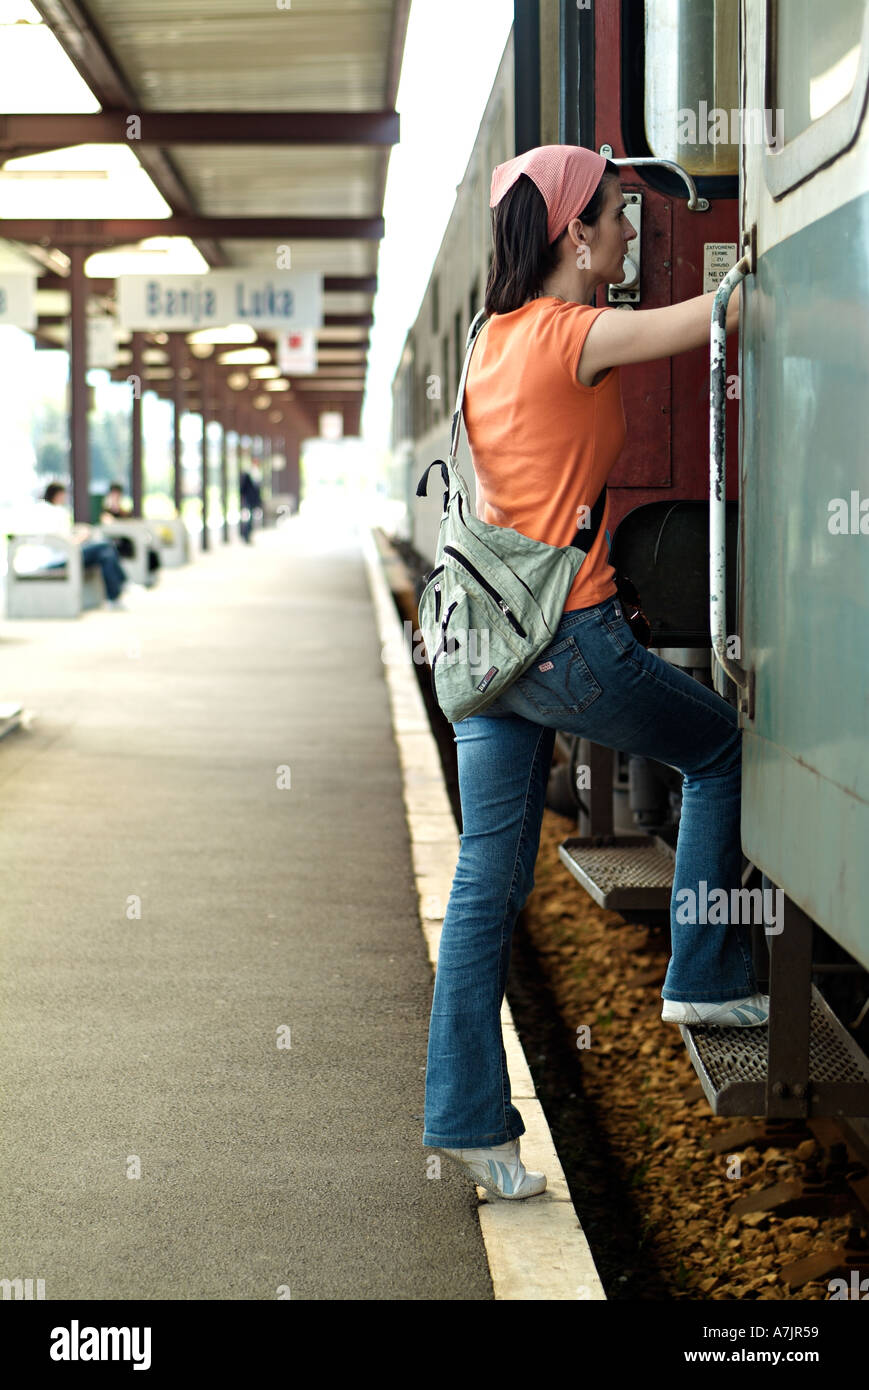 Femme s'embarquent dans un train à une gare ferroviaire Banque D'Images